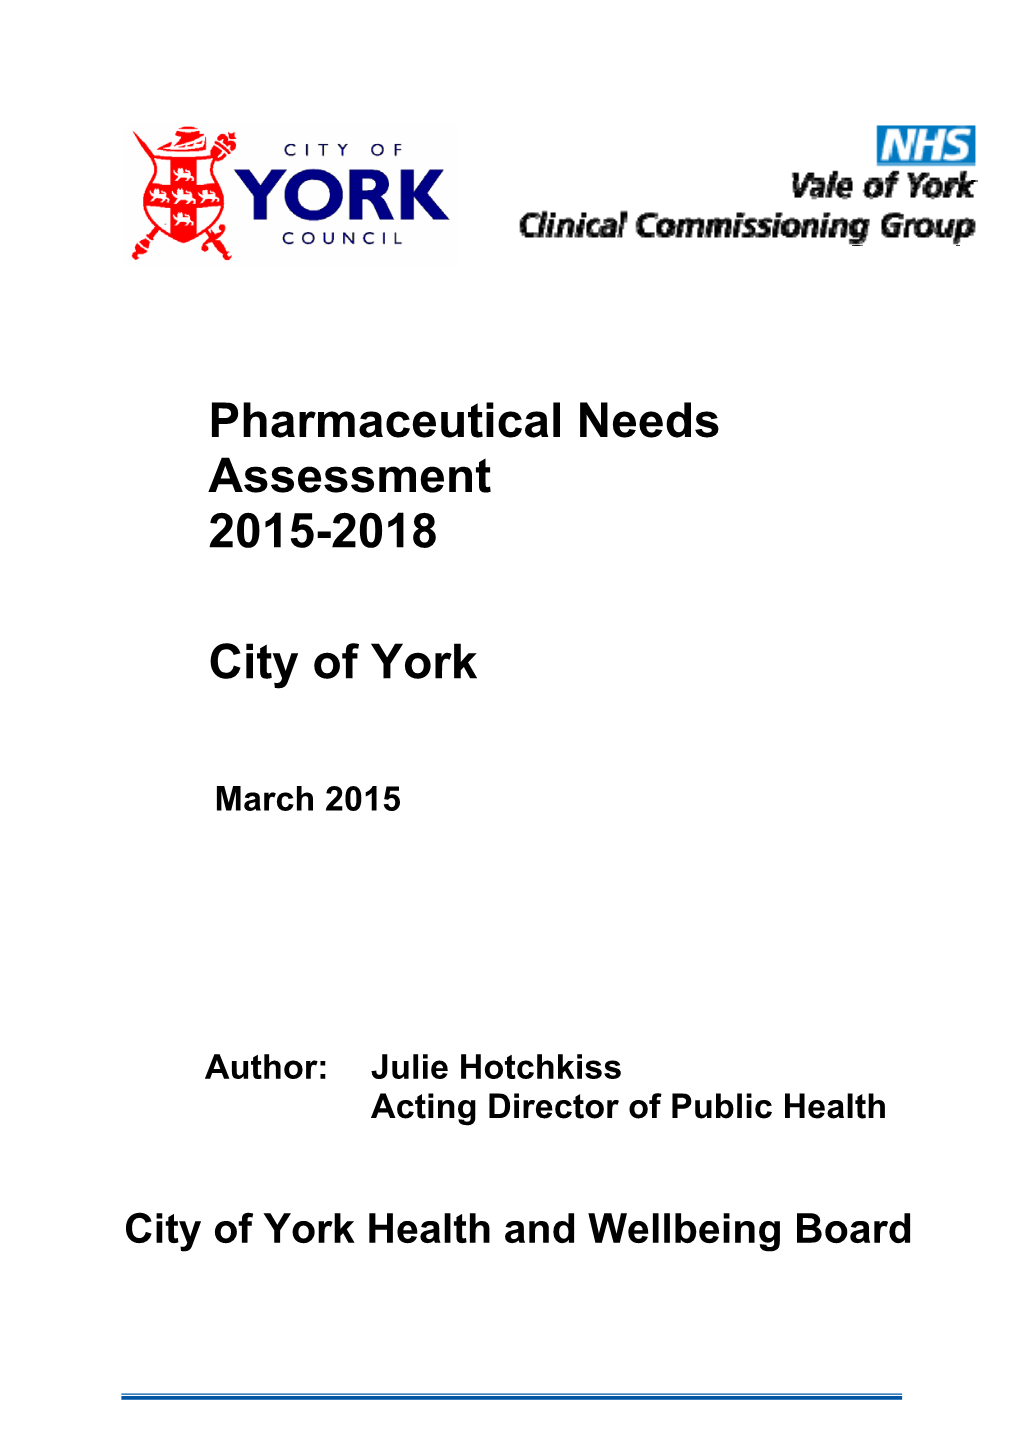 Pharmaceutical Needs Assessment 2015-2018